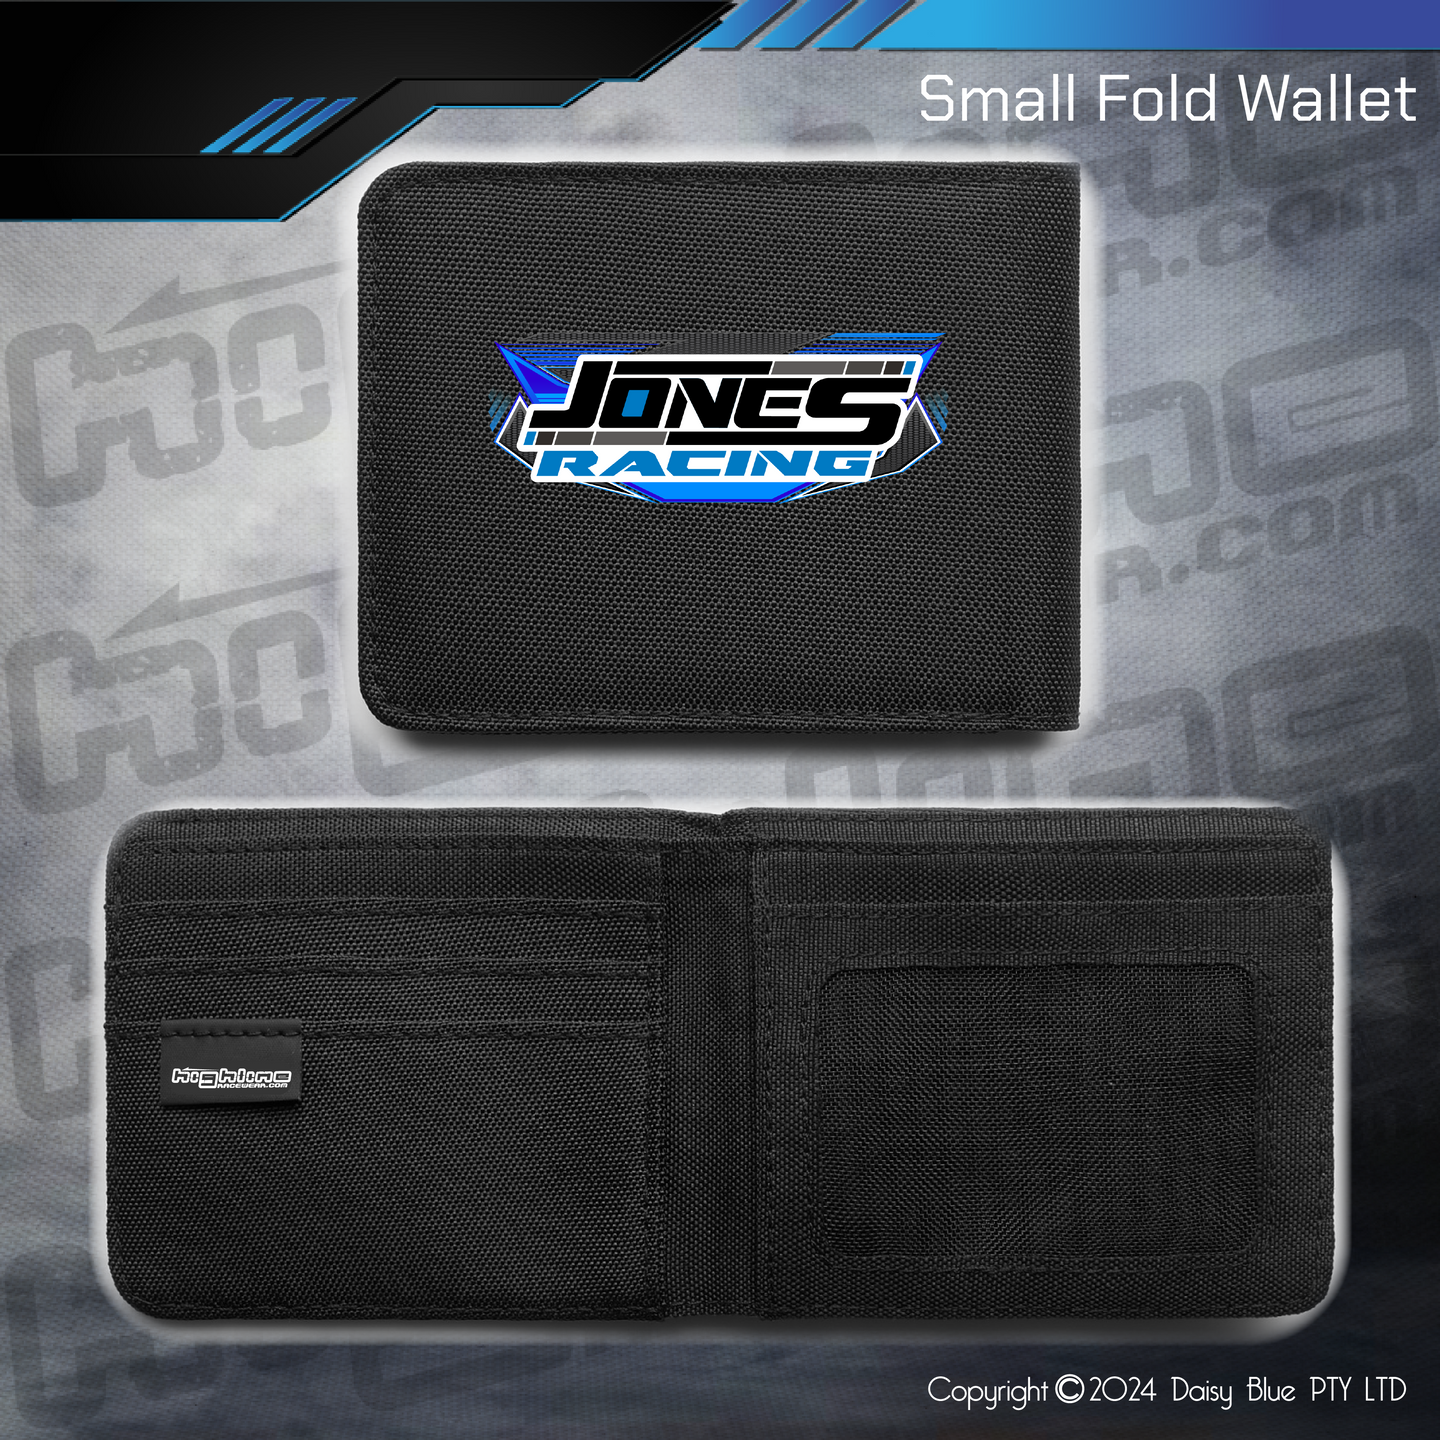 Compact Wallet - Jones Racing